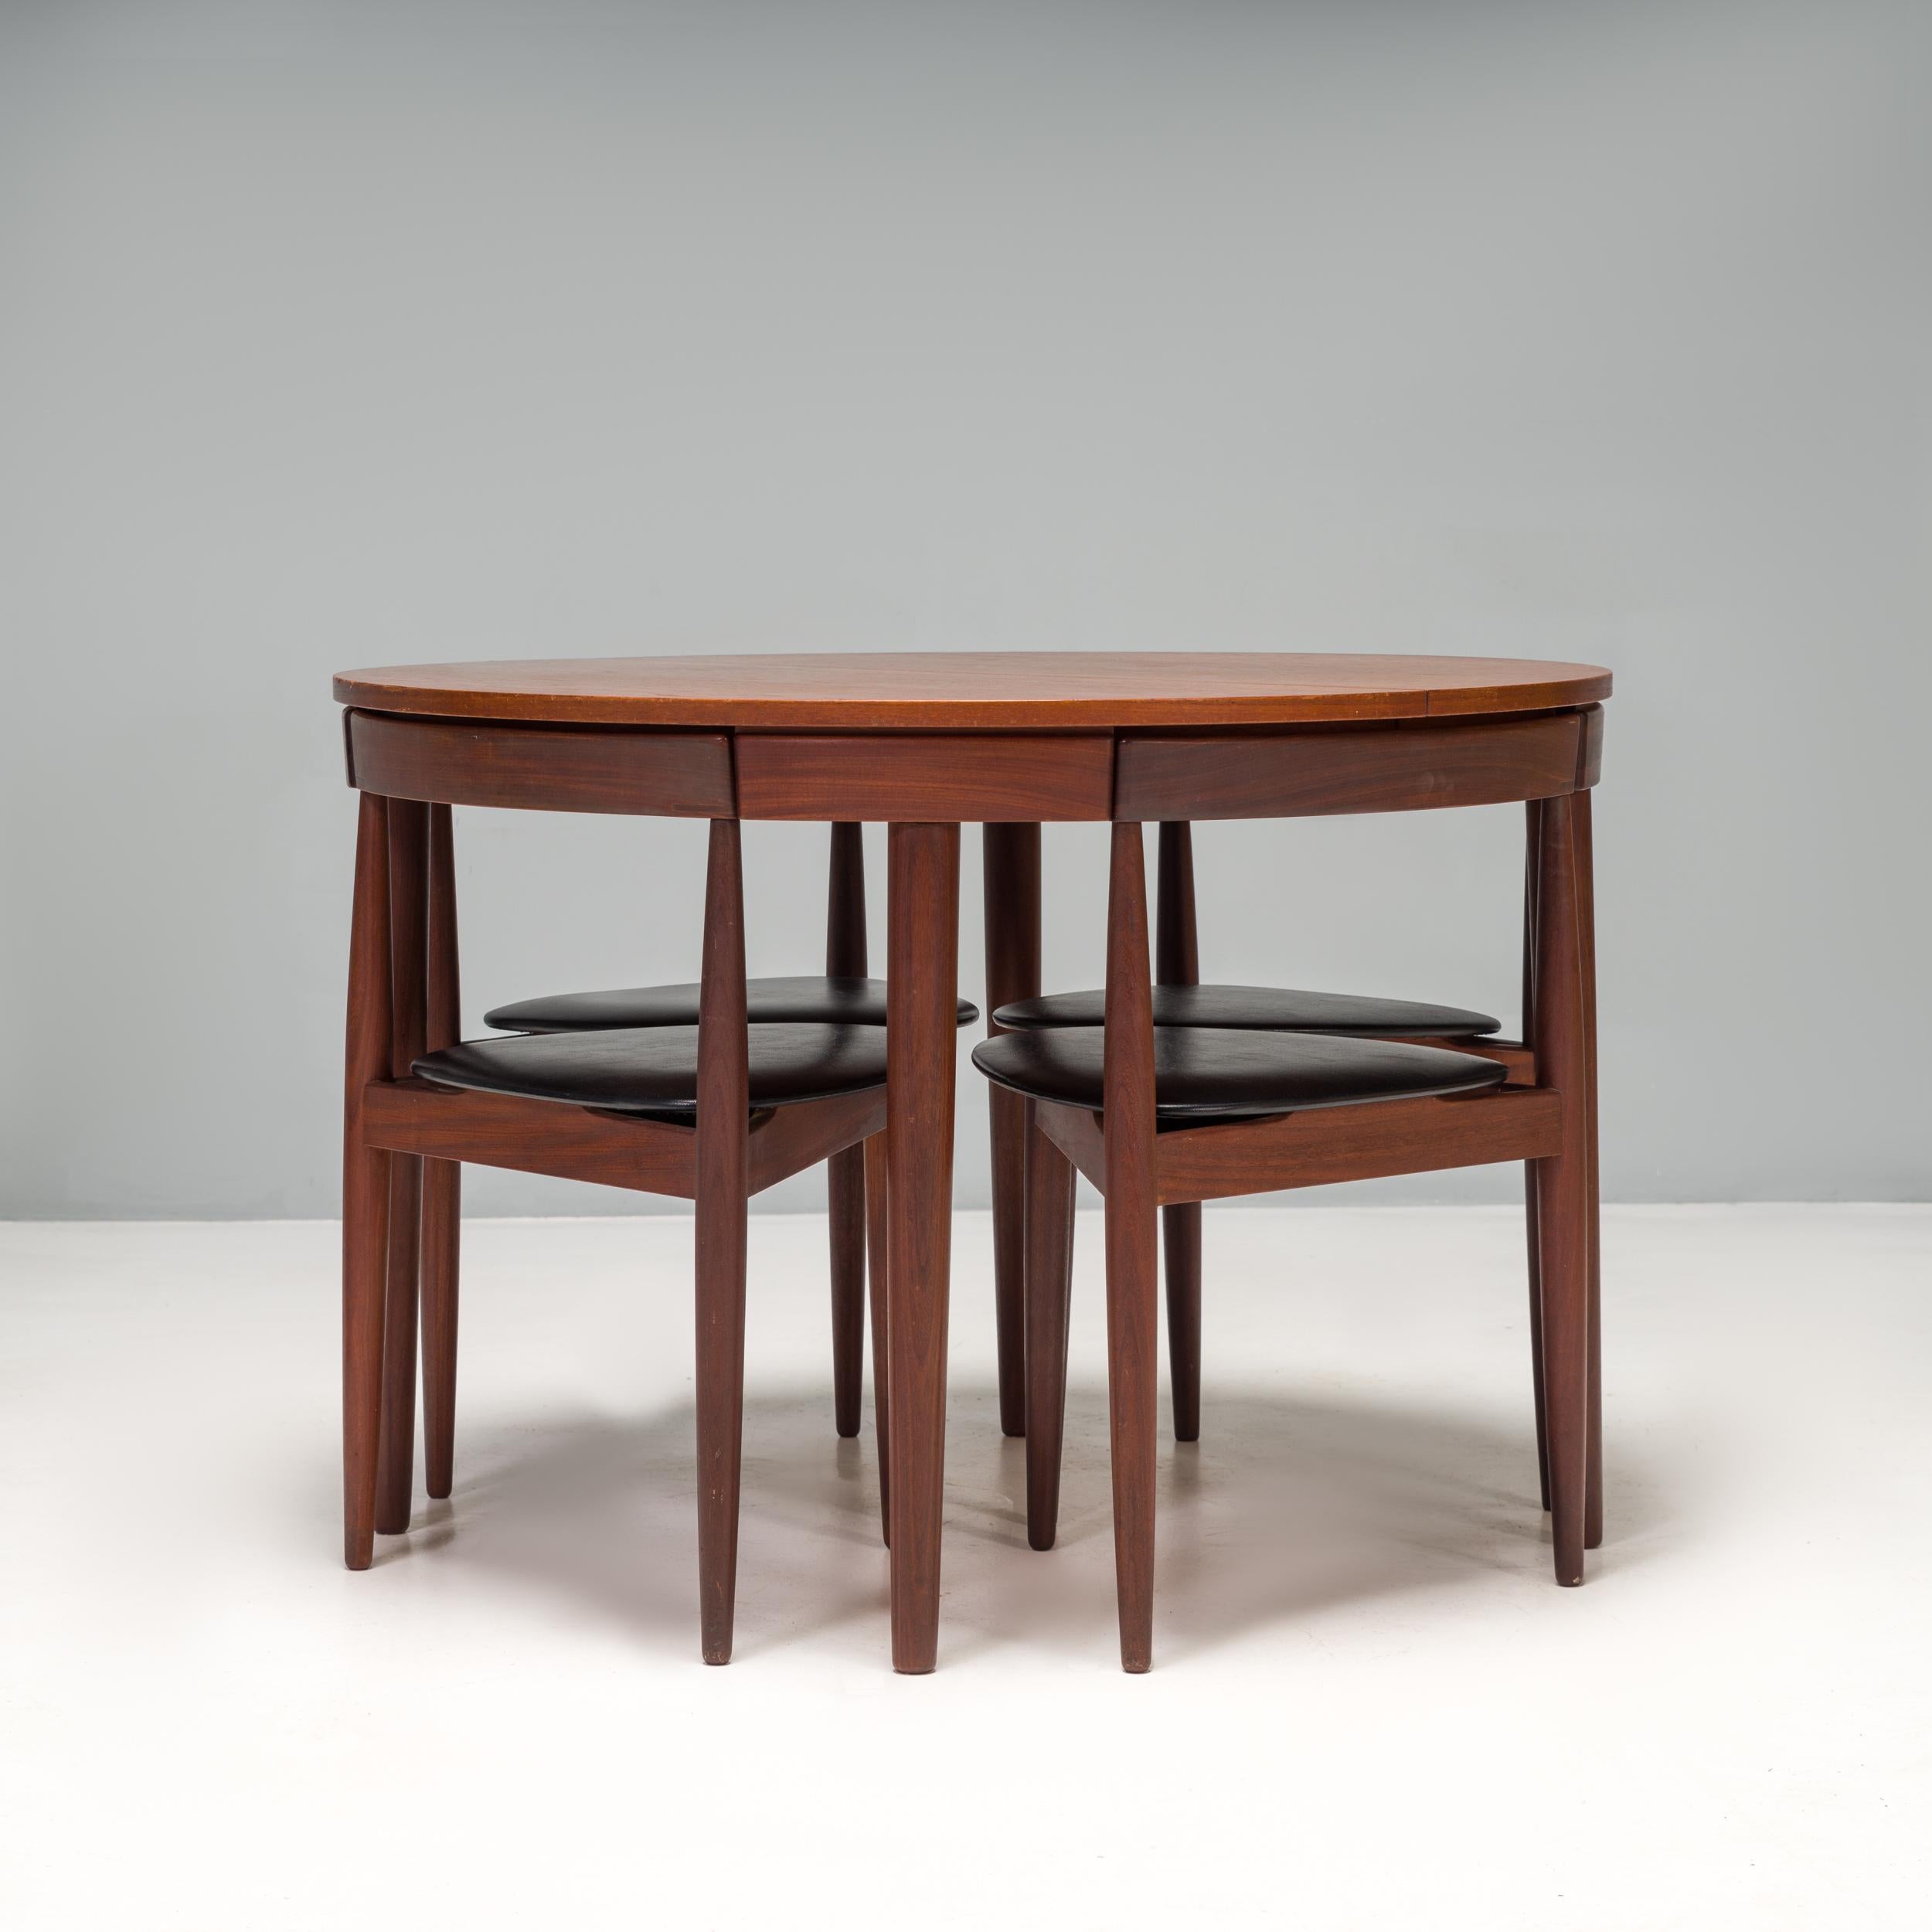 Dieser von Hans Olsen entworfene Esstisch mit Stühlen aus den 1960er Jahren ist ein fantastisches Beispiel für dänisches Design aus der Mitte des Jahrhunderts.

Das Set besteht aus einem runden Tisch und 6 passenden Stühlen und ist aus Teakholz